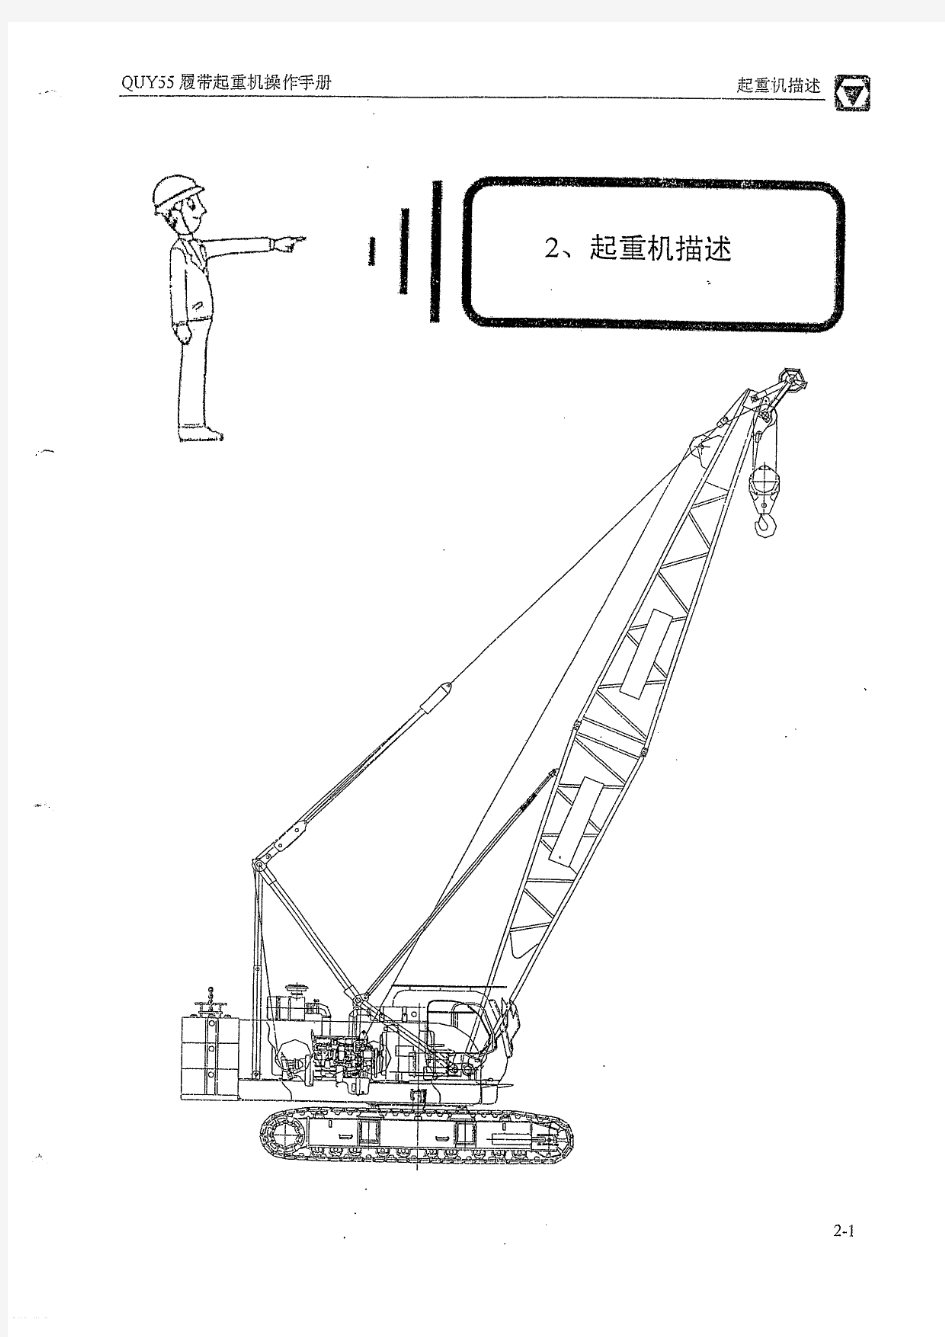 55吨履带吊徐工QUY55 操作手册——技术说明、性能参数和运输信息